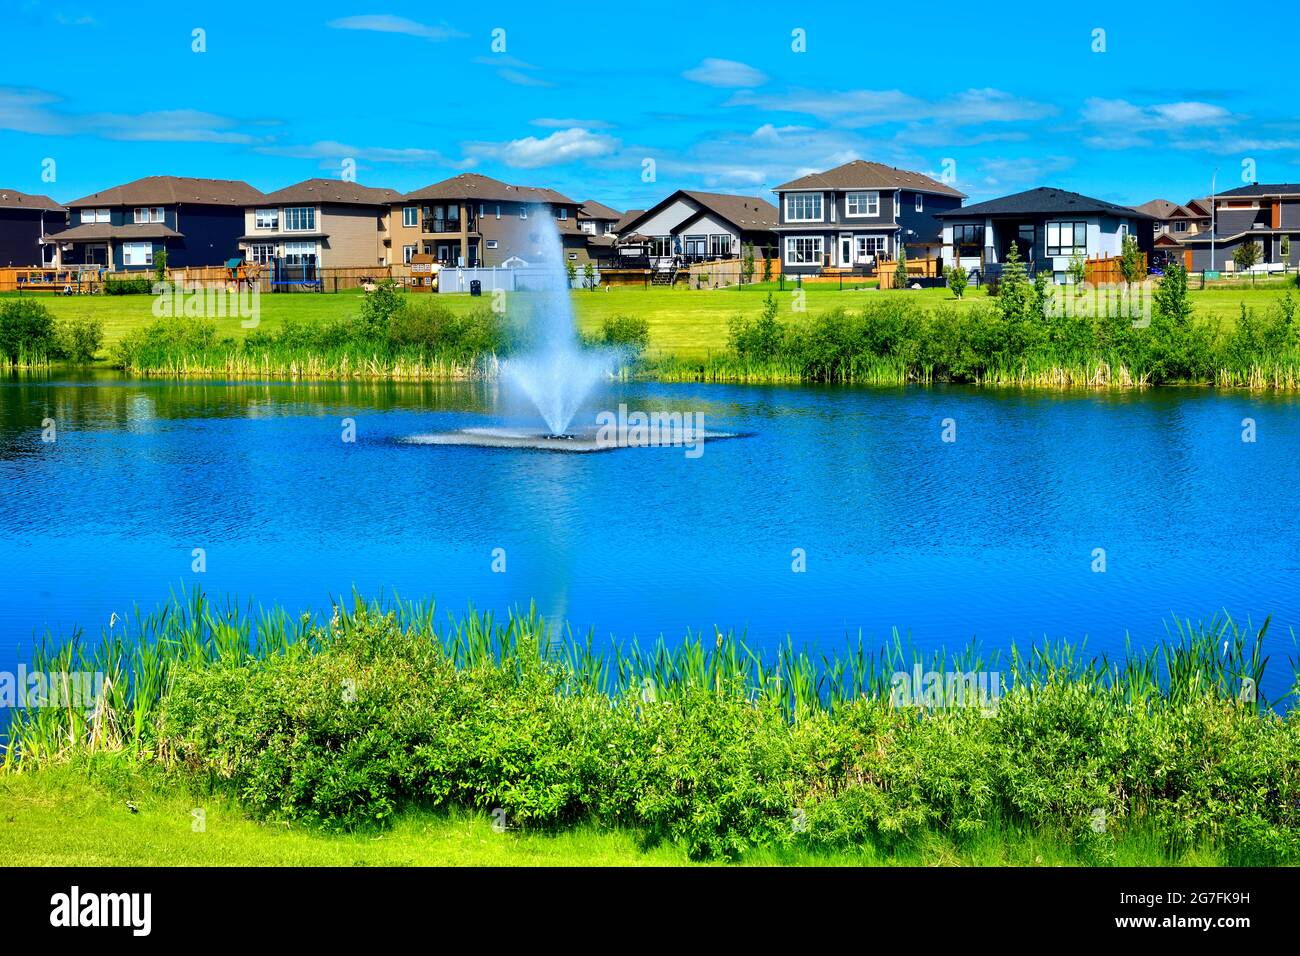 Urbanes Leben mit Grünflächen, einem Teich, Häusern und blauem Himmel in Morinville, Alberta, Kanada. Stockfoto